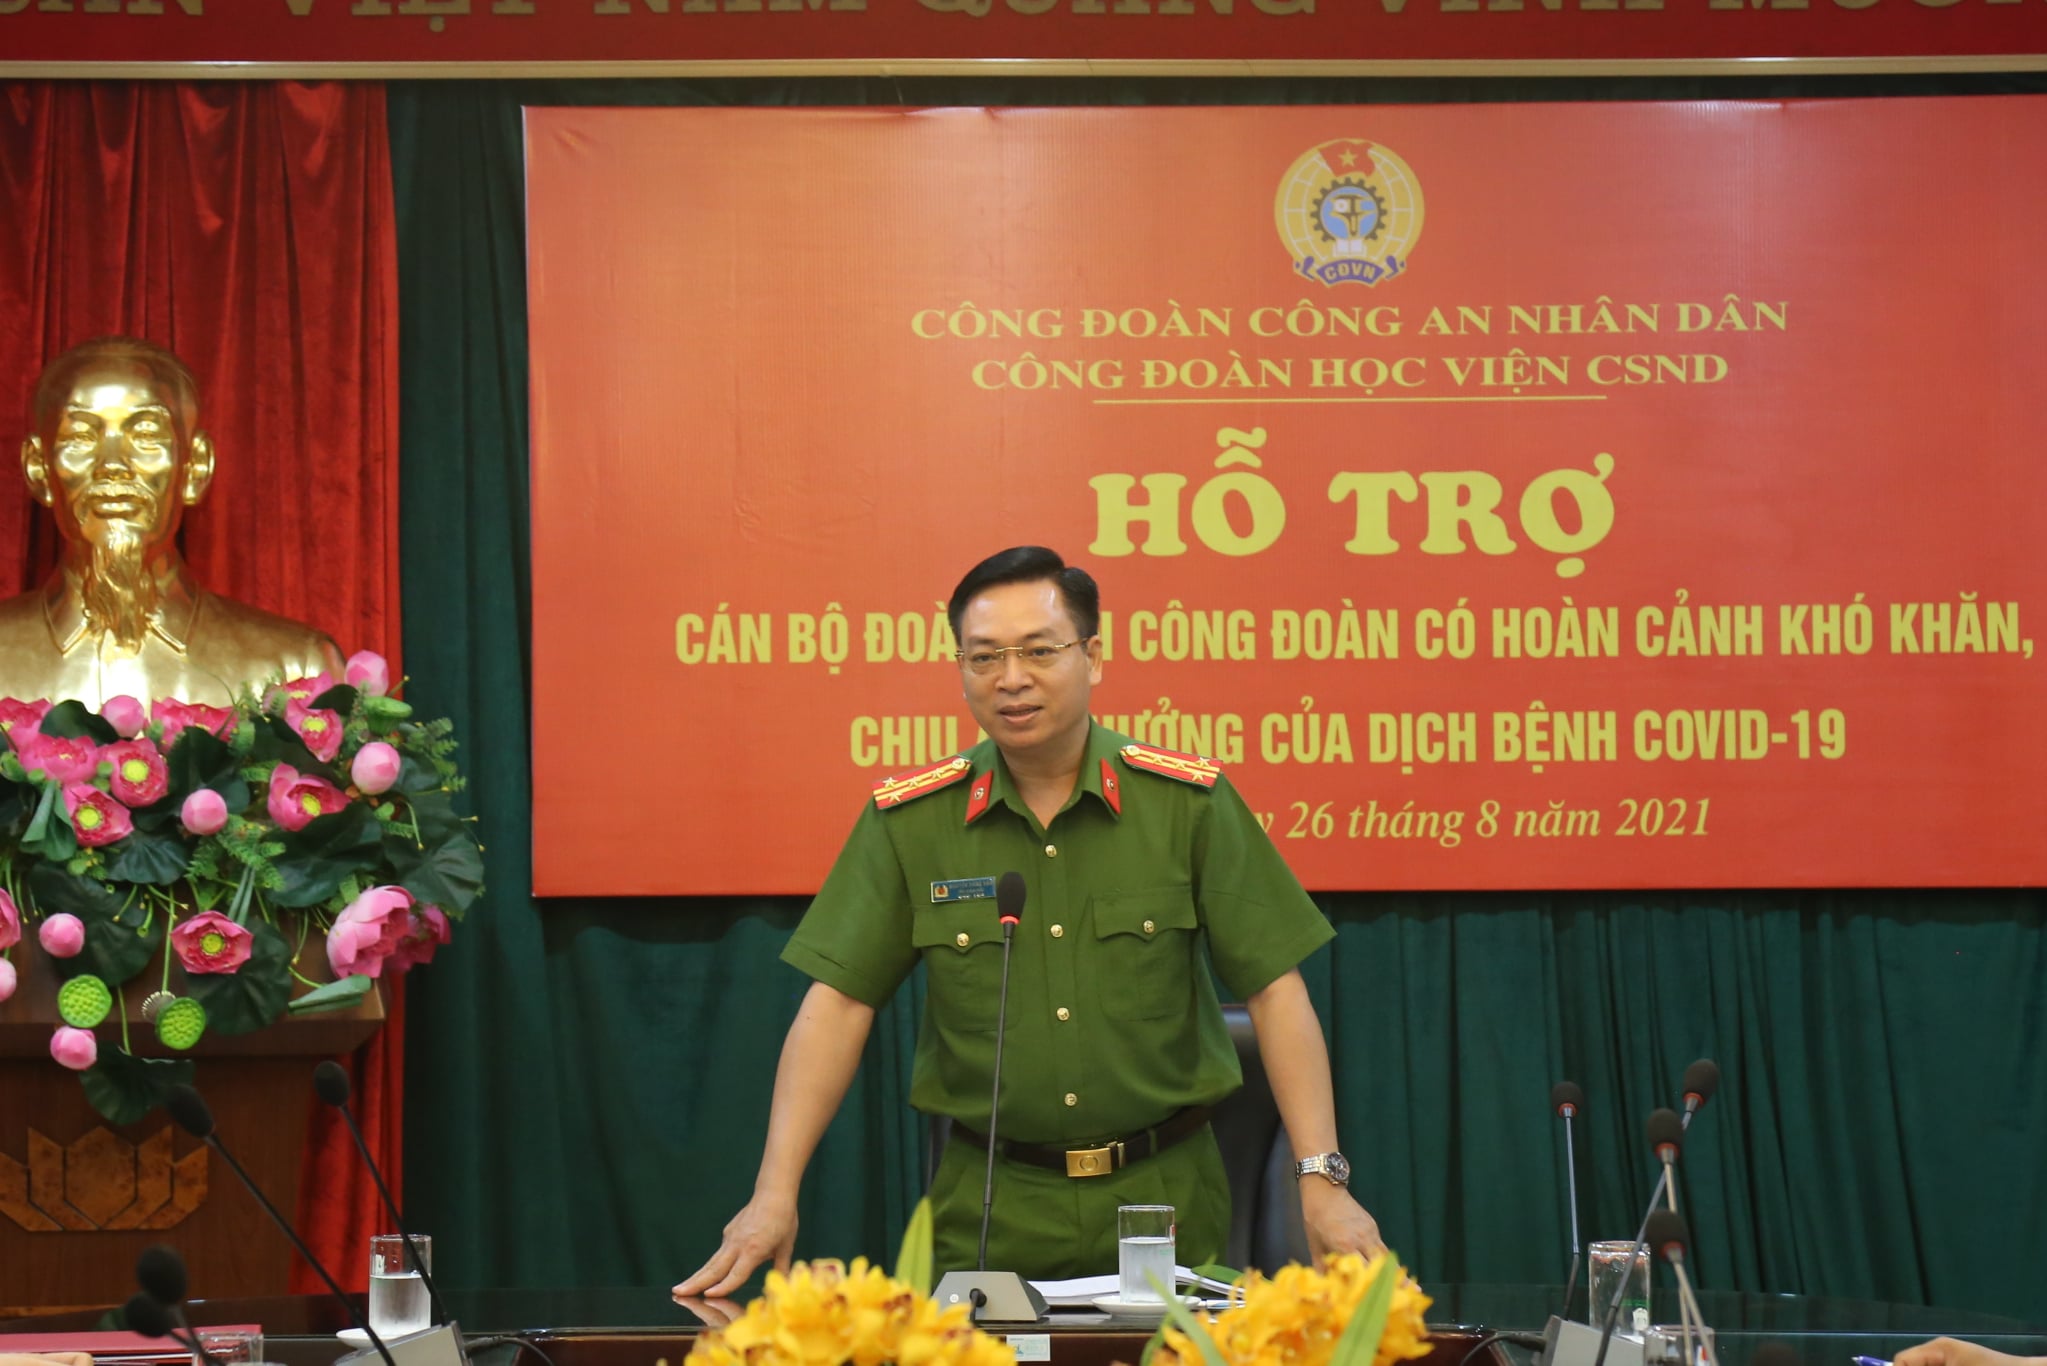 Đại tá, TS Nguyễn Đăng Sáu - Phó Giám đốc Học viện phát biểu tại chương trình